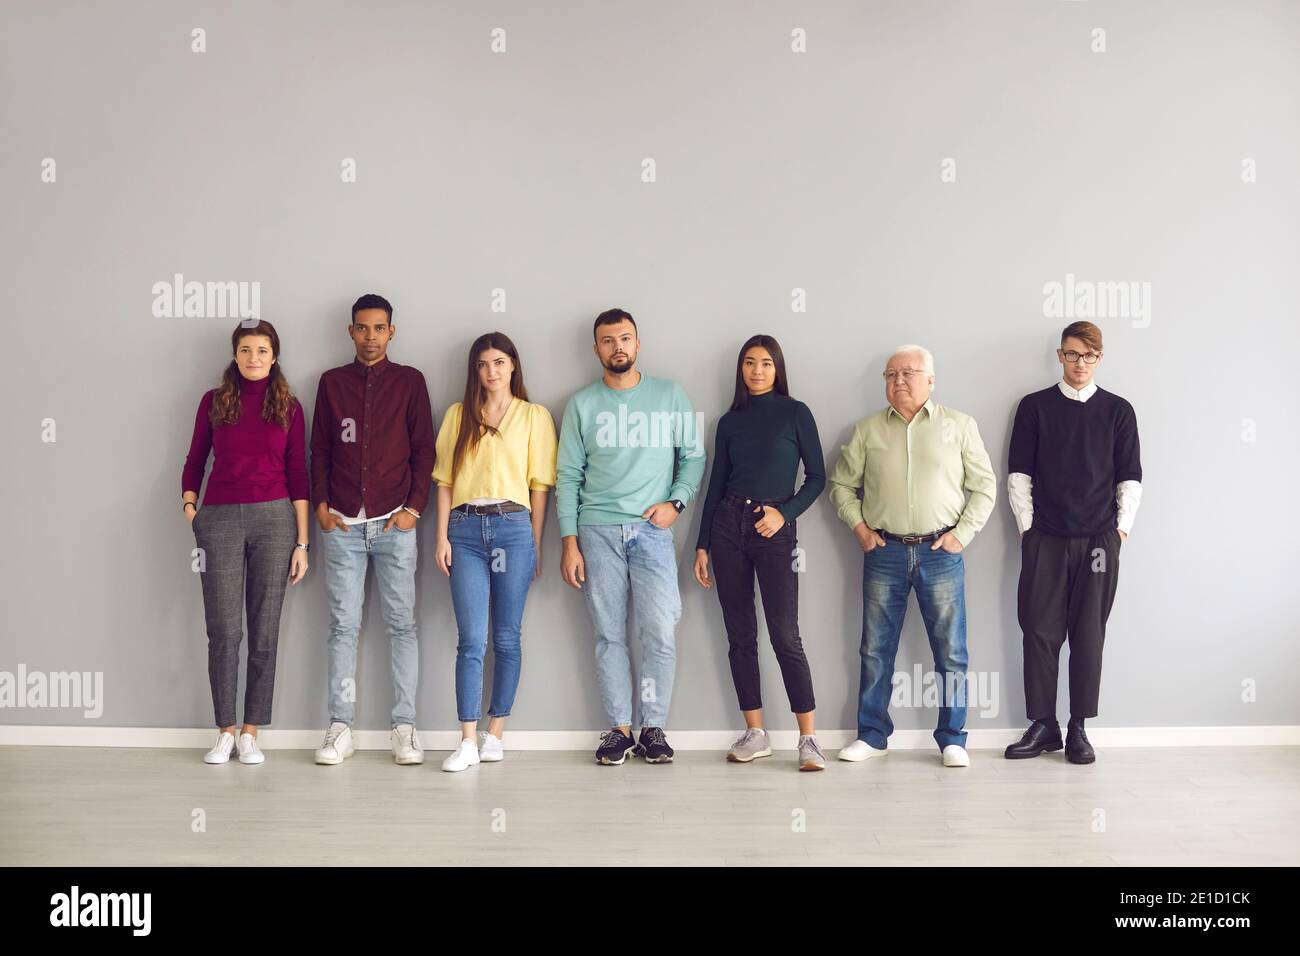 Ein Team von Startups, bestehend aus Menschen unterschiedlichen Alters und Nationalitäten, steht in einer Reihe. Stockfoto